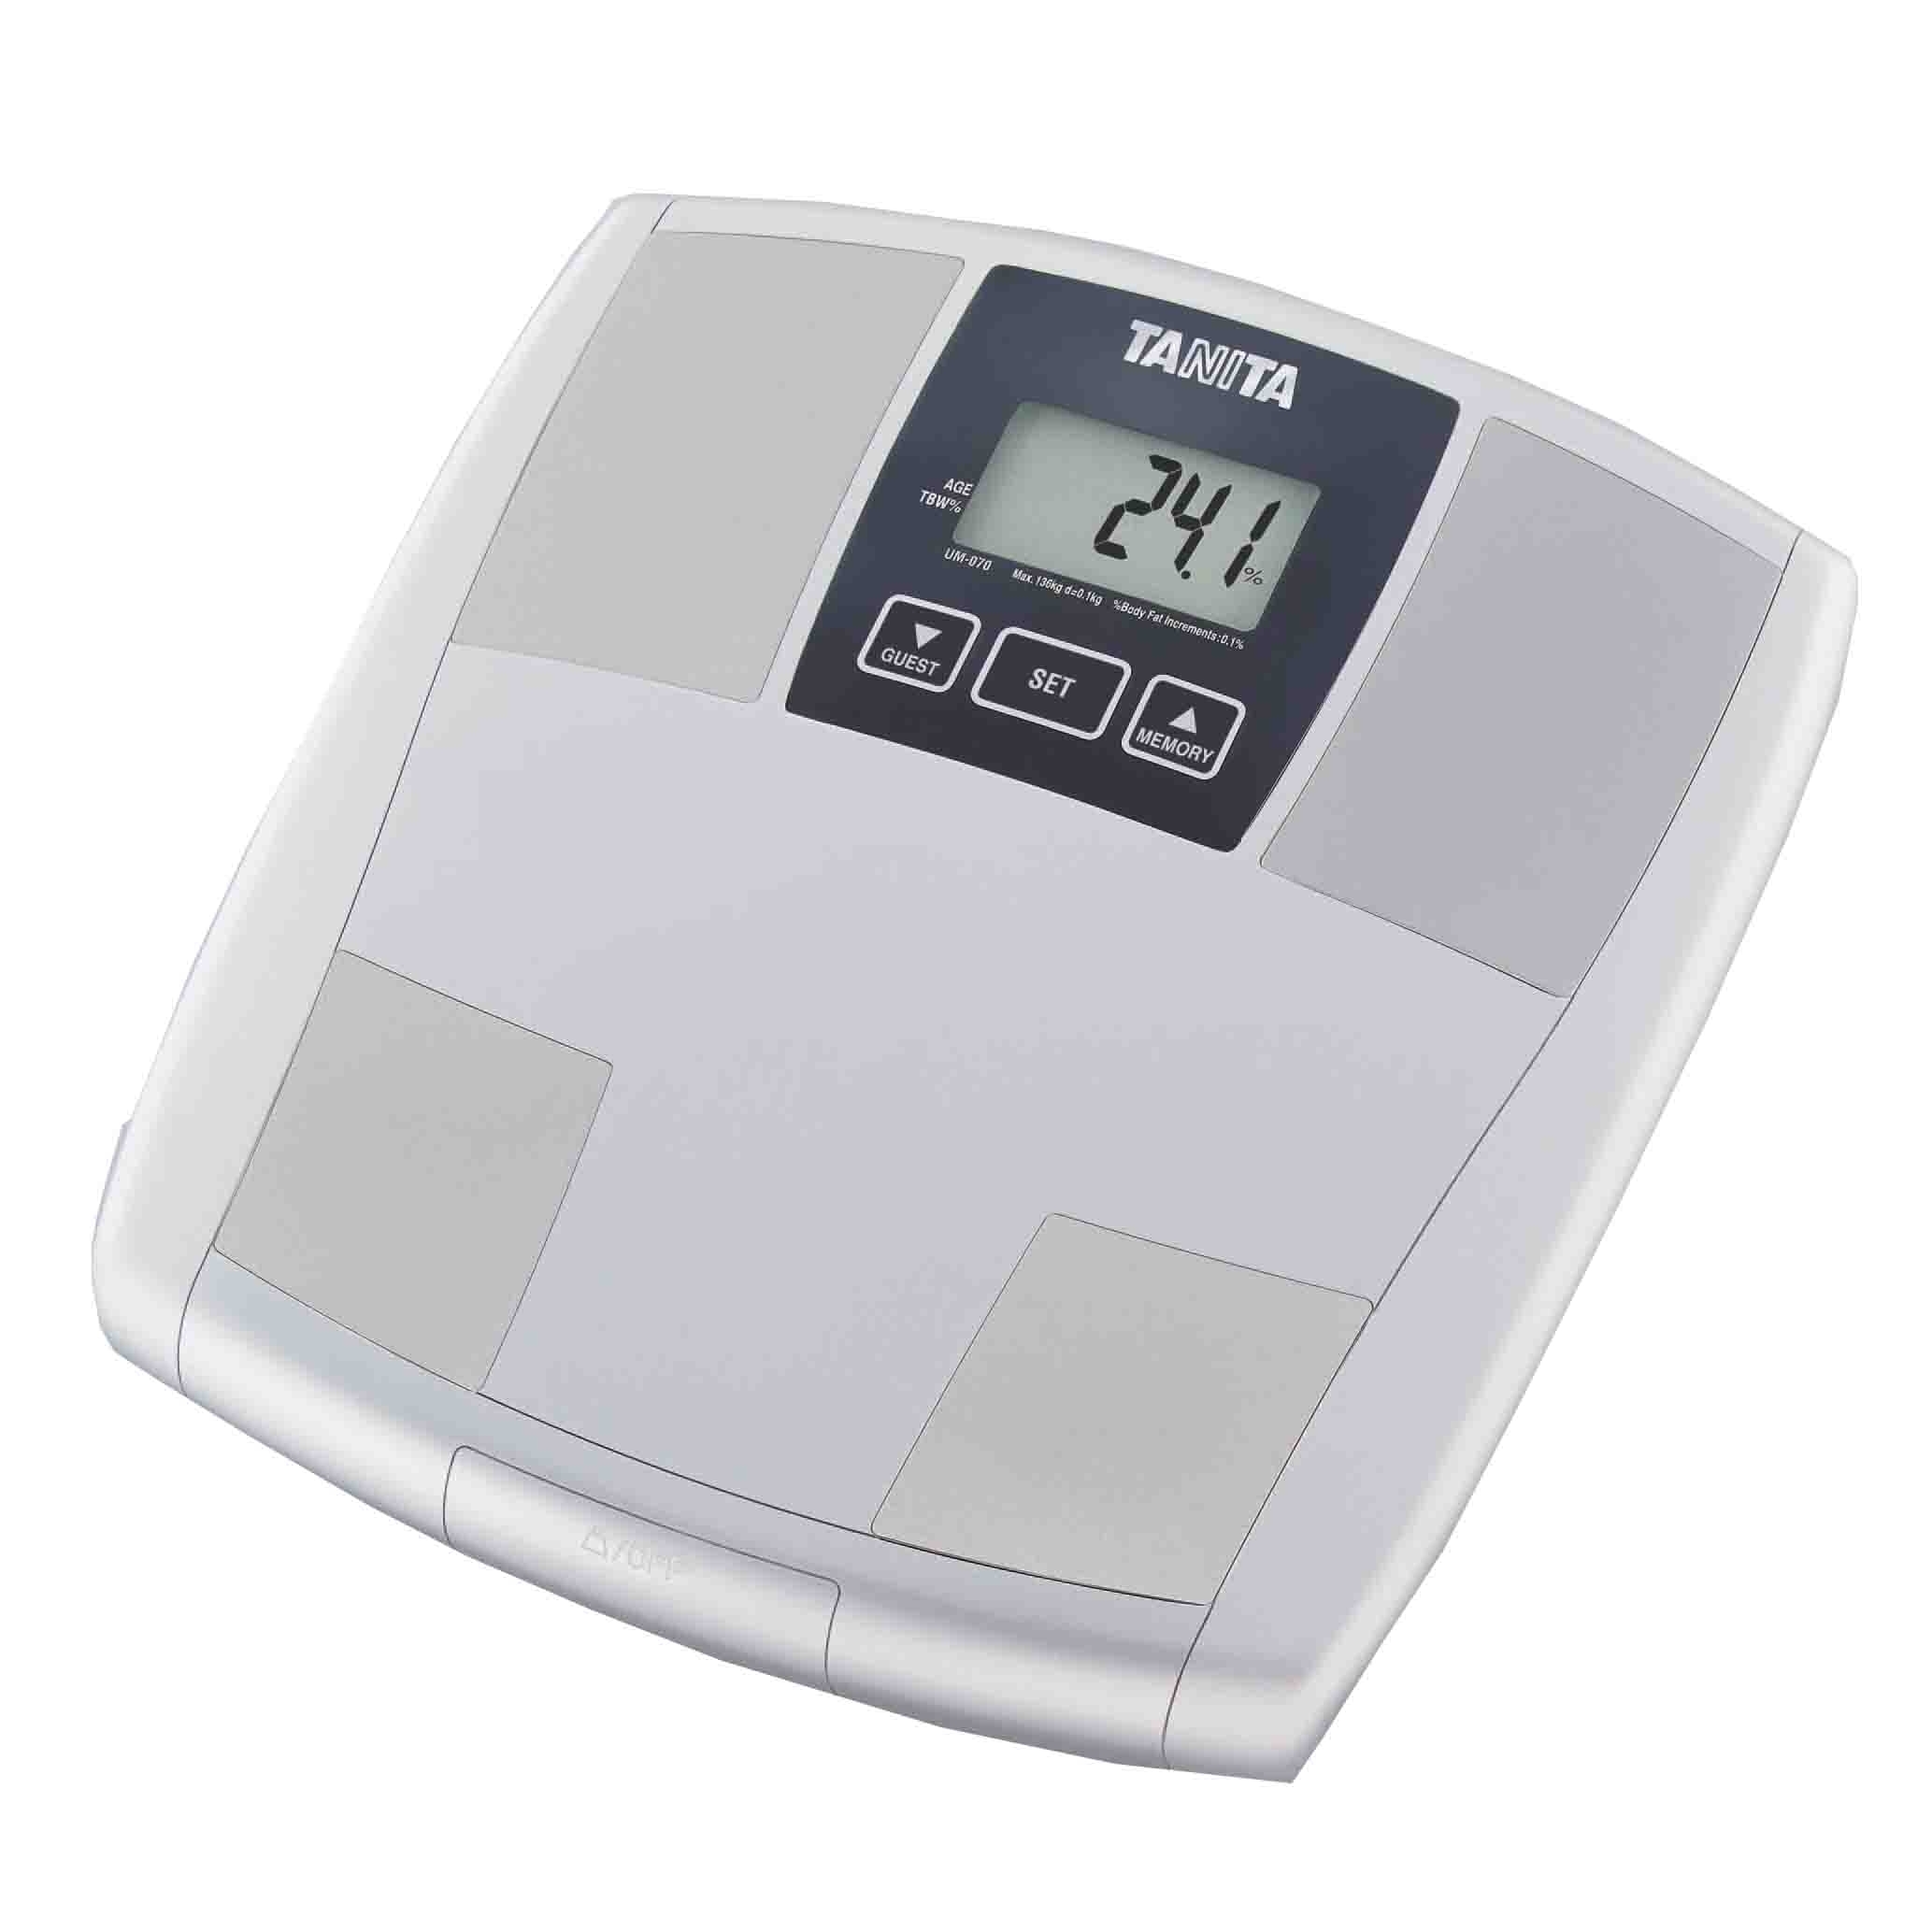 ميزان تانيتا المتطور لقياس الوزن ونسب الدهون والعضلات -UM-070, أبيض